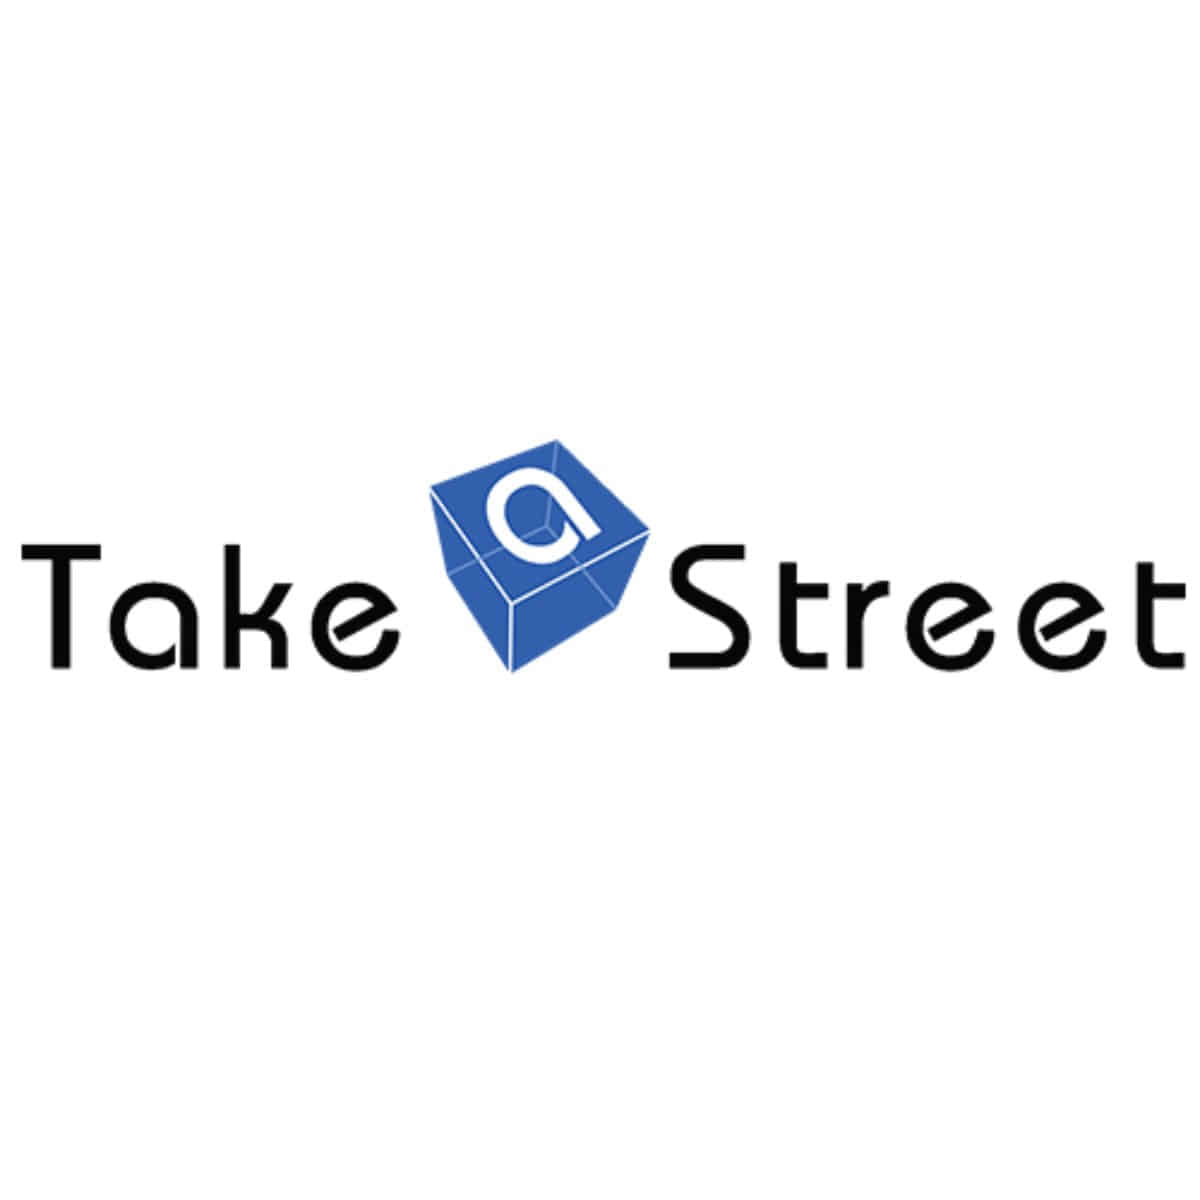 TAKE A STREET - 어패럴싯